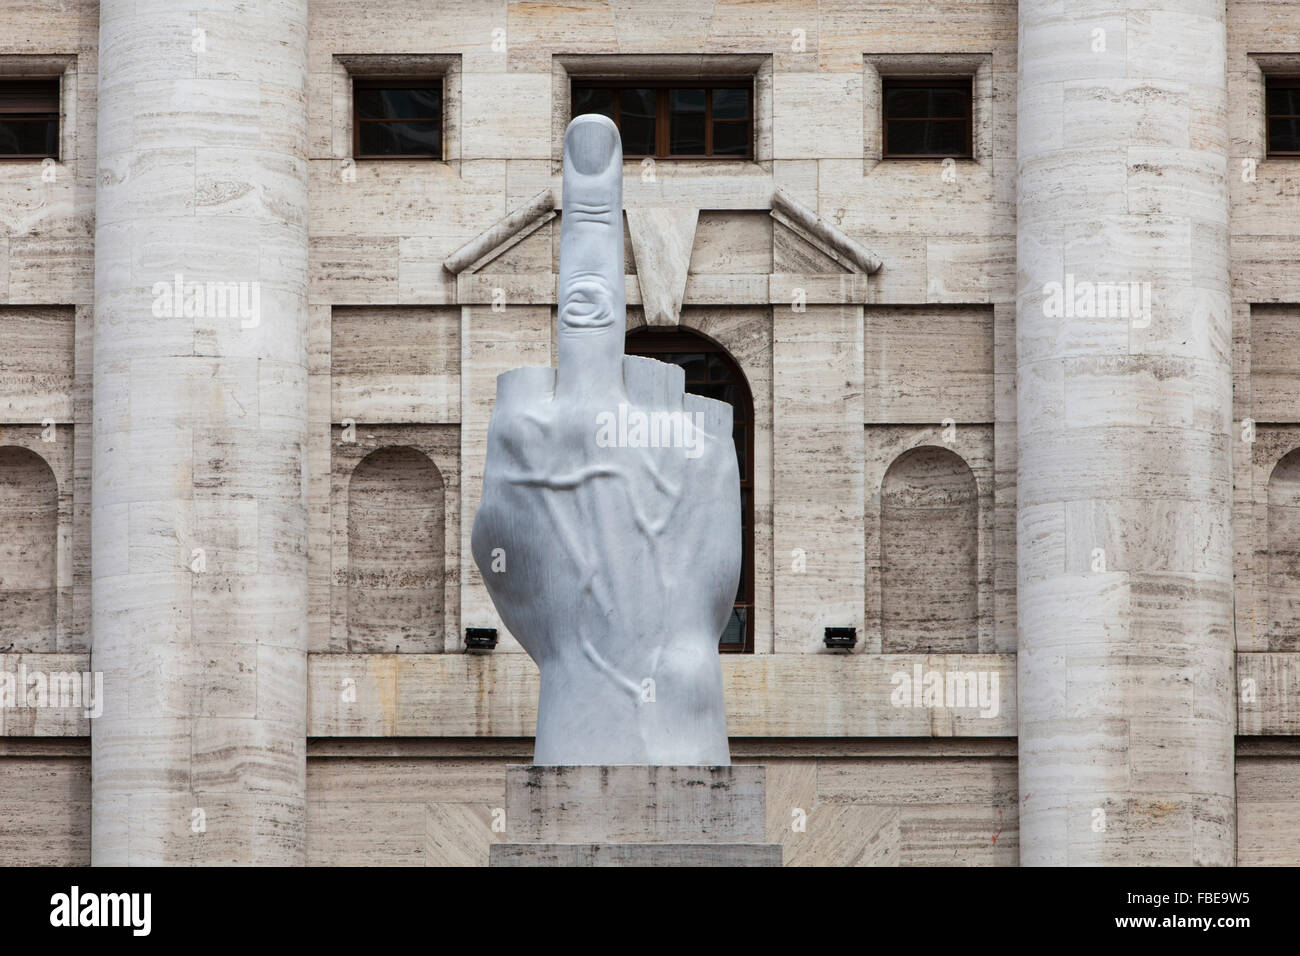 La scultura di Maurizio Cattelan,Piazza Affari,Affari square,Milano Foto Stock